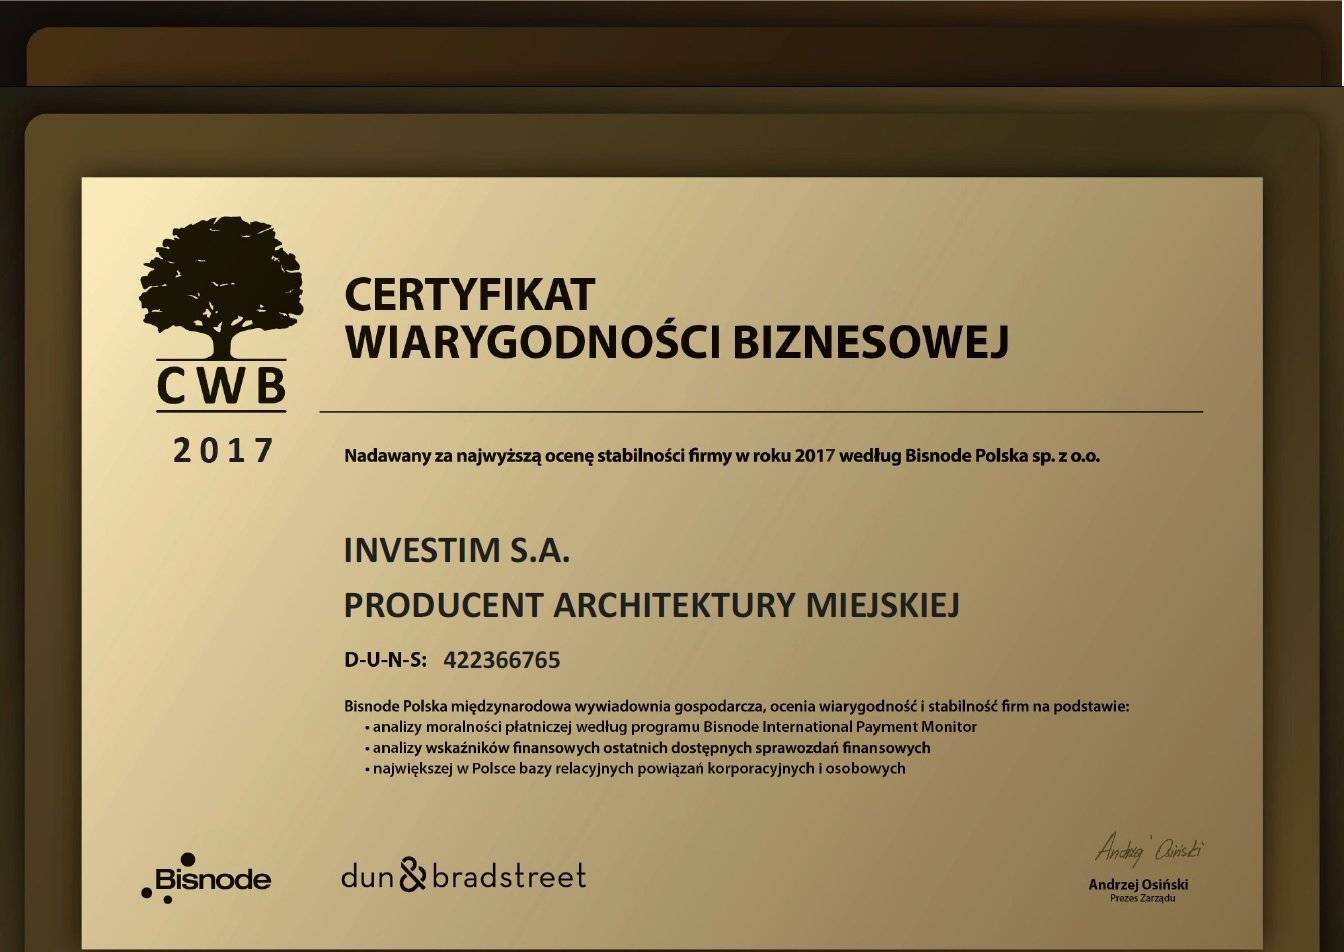 certyfikat-wiarygodnosci-biznesowej-2017_0_large.jpg